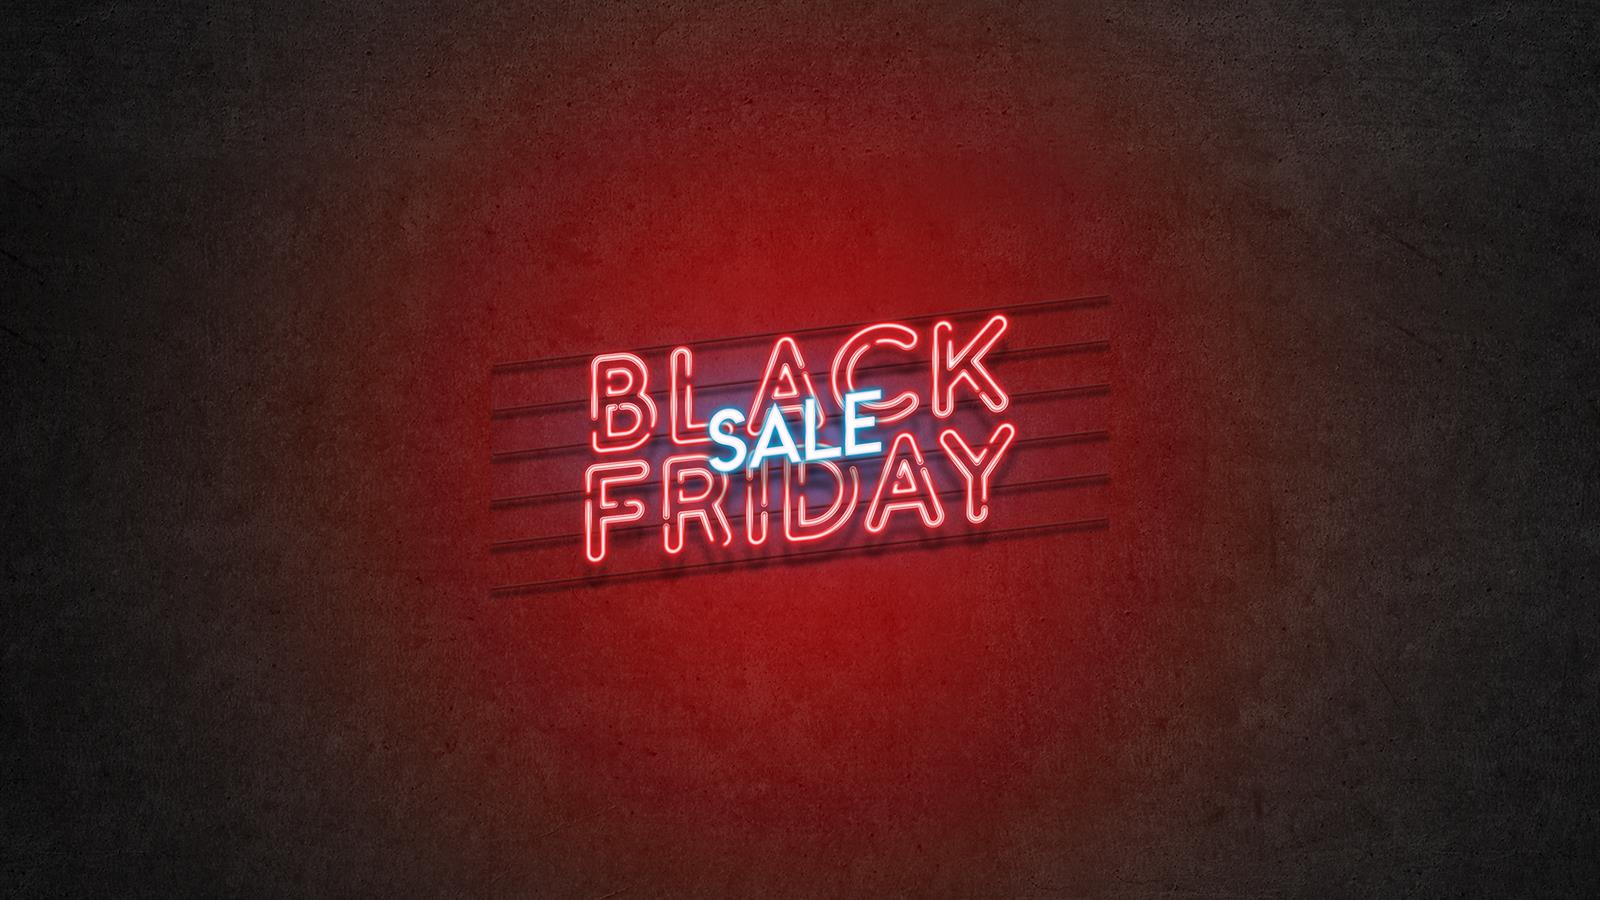 Black Friday Mega Sale - 30% OFF